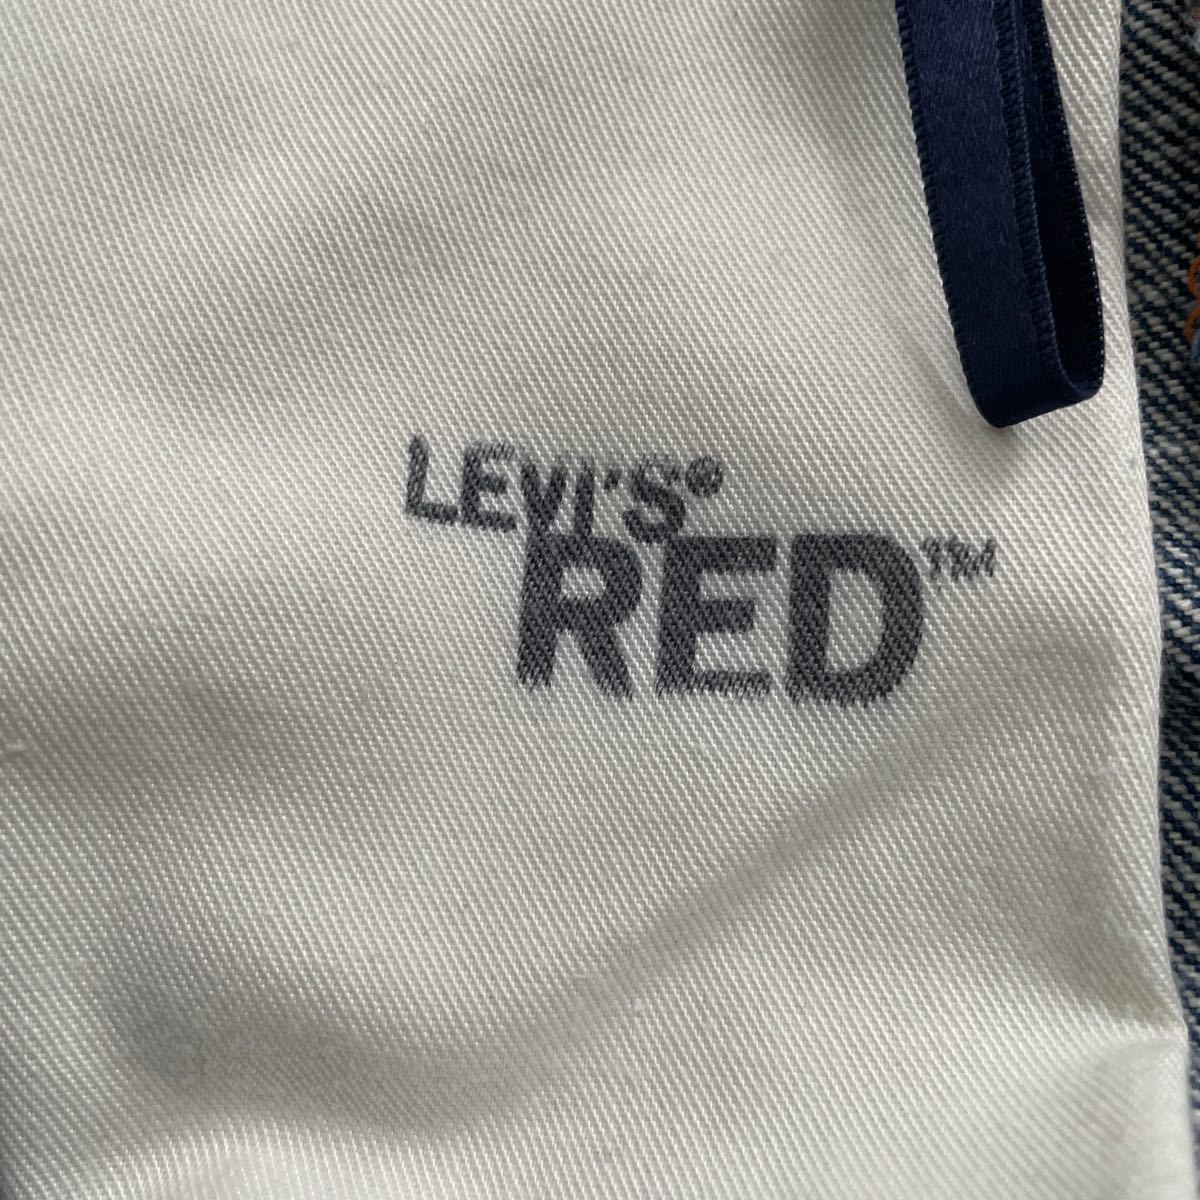  б/у LEVIS RED 1st COMFORT 30 x 30 Испания производства Levi's красный First комфорт 